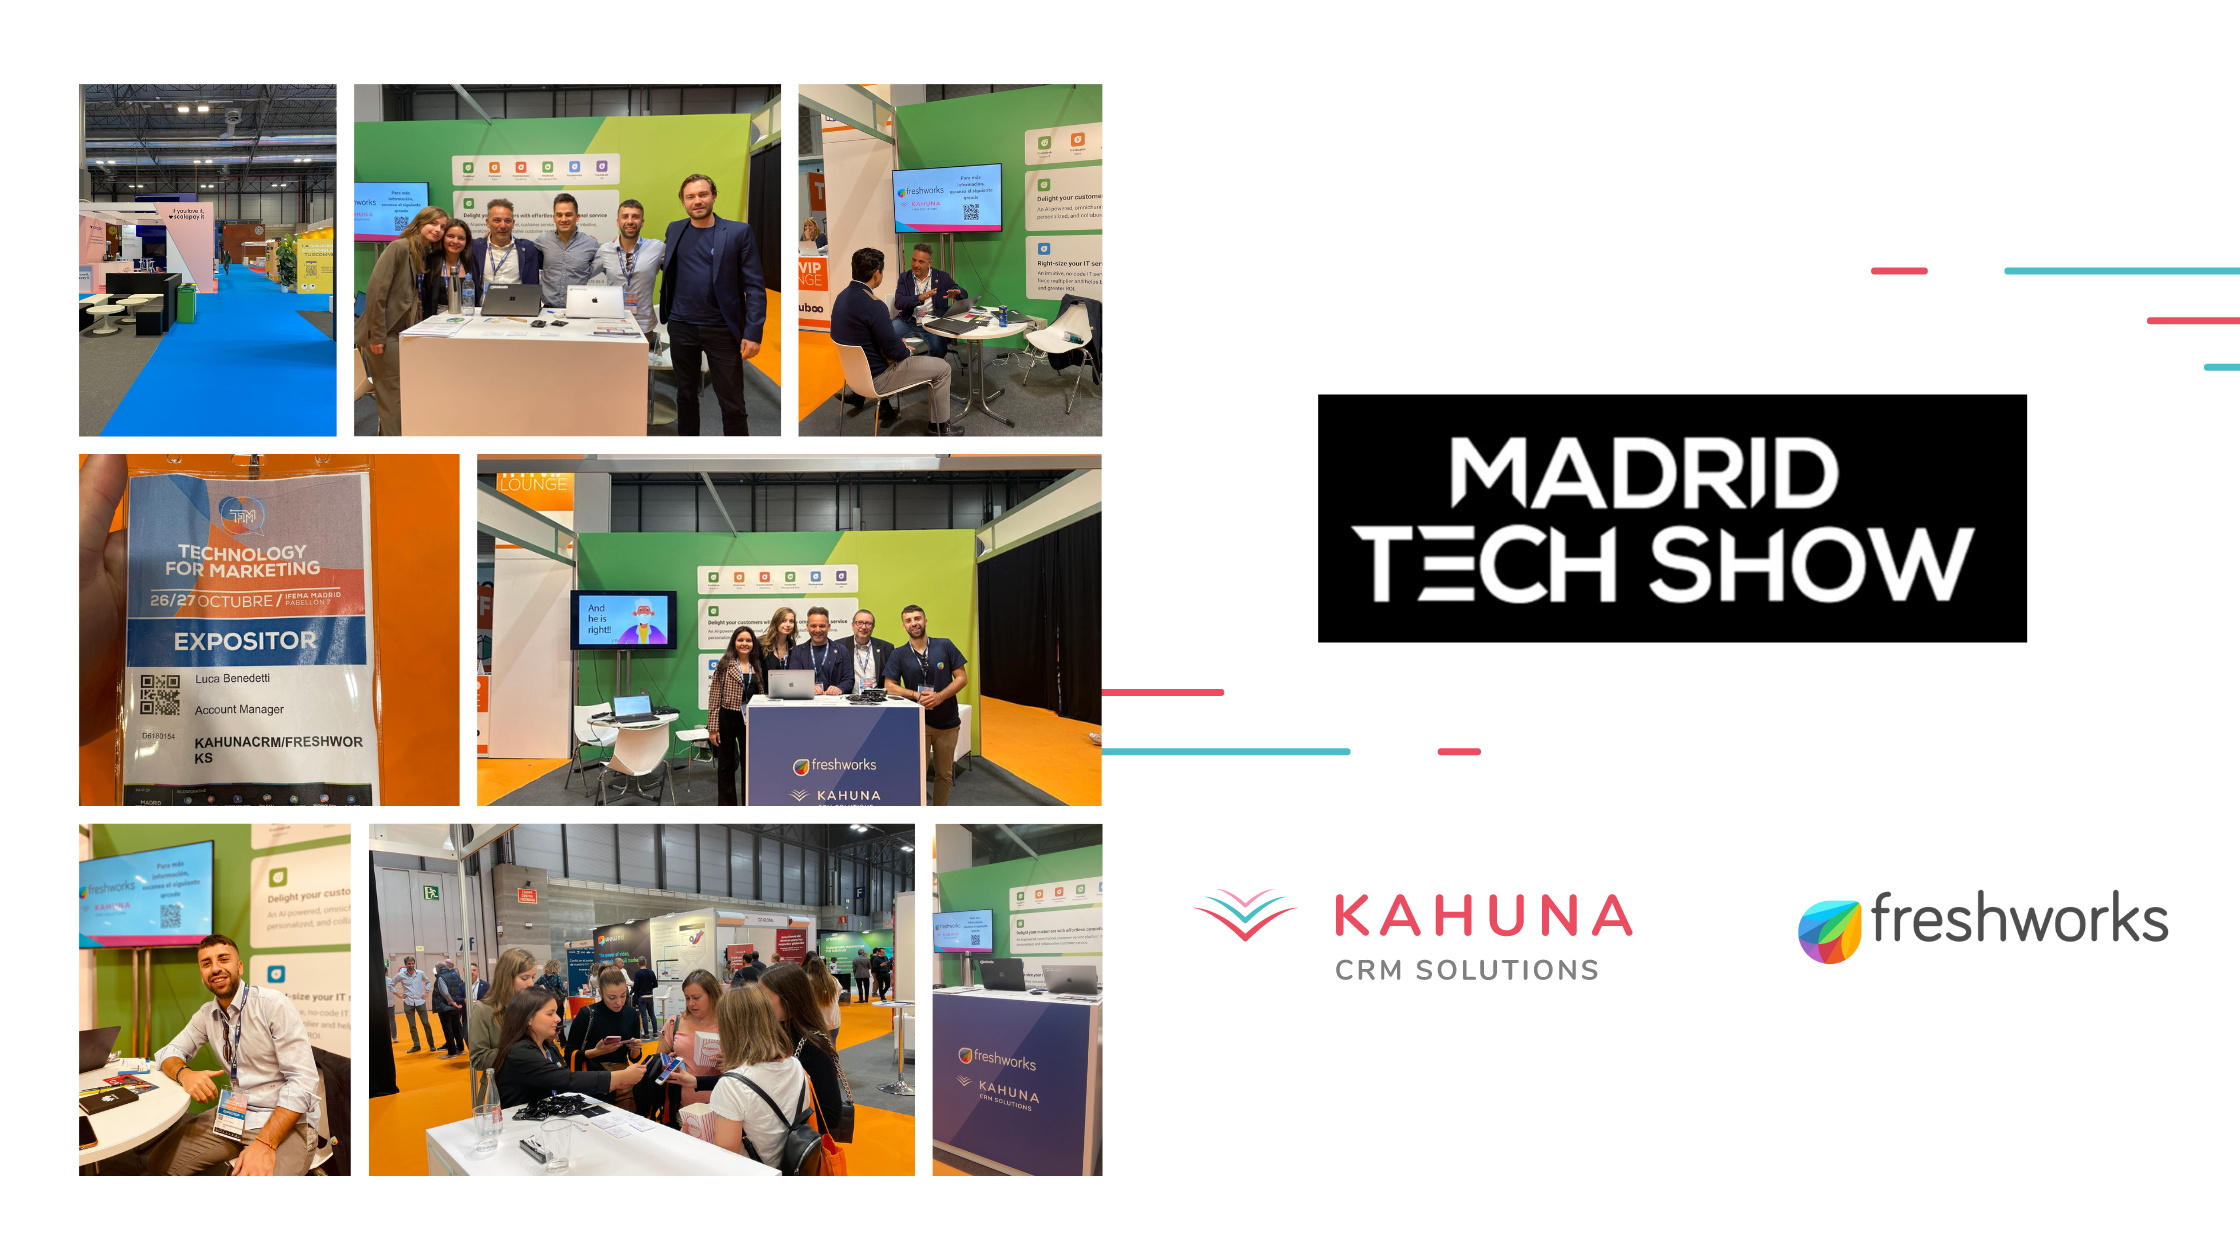 Madrid Tech Show - Kahuna CRM